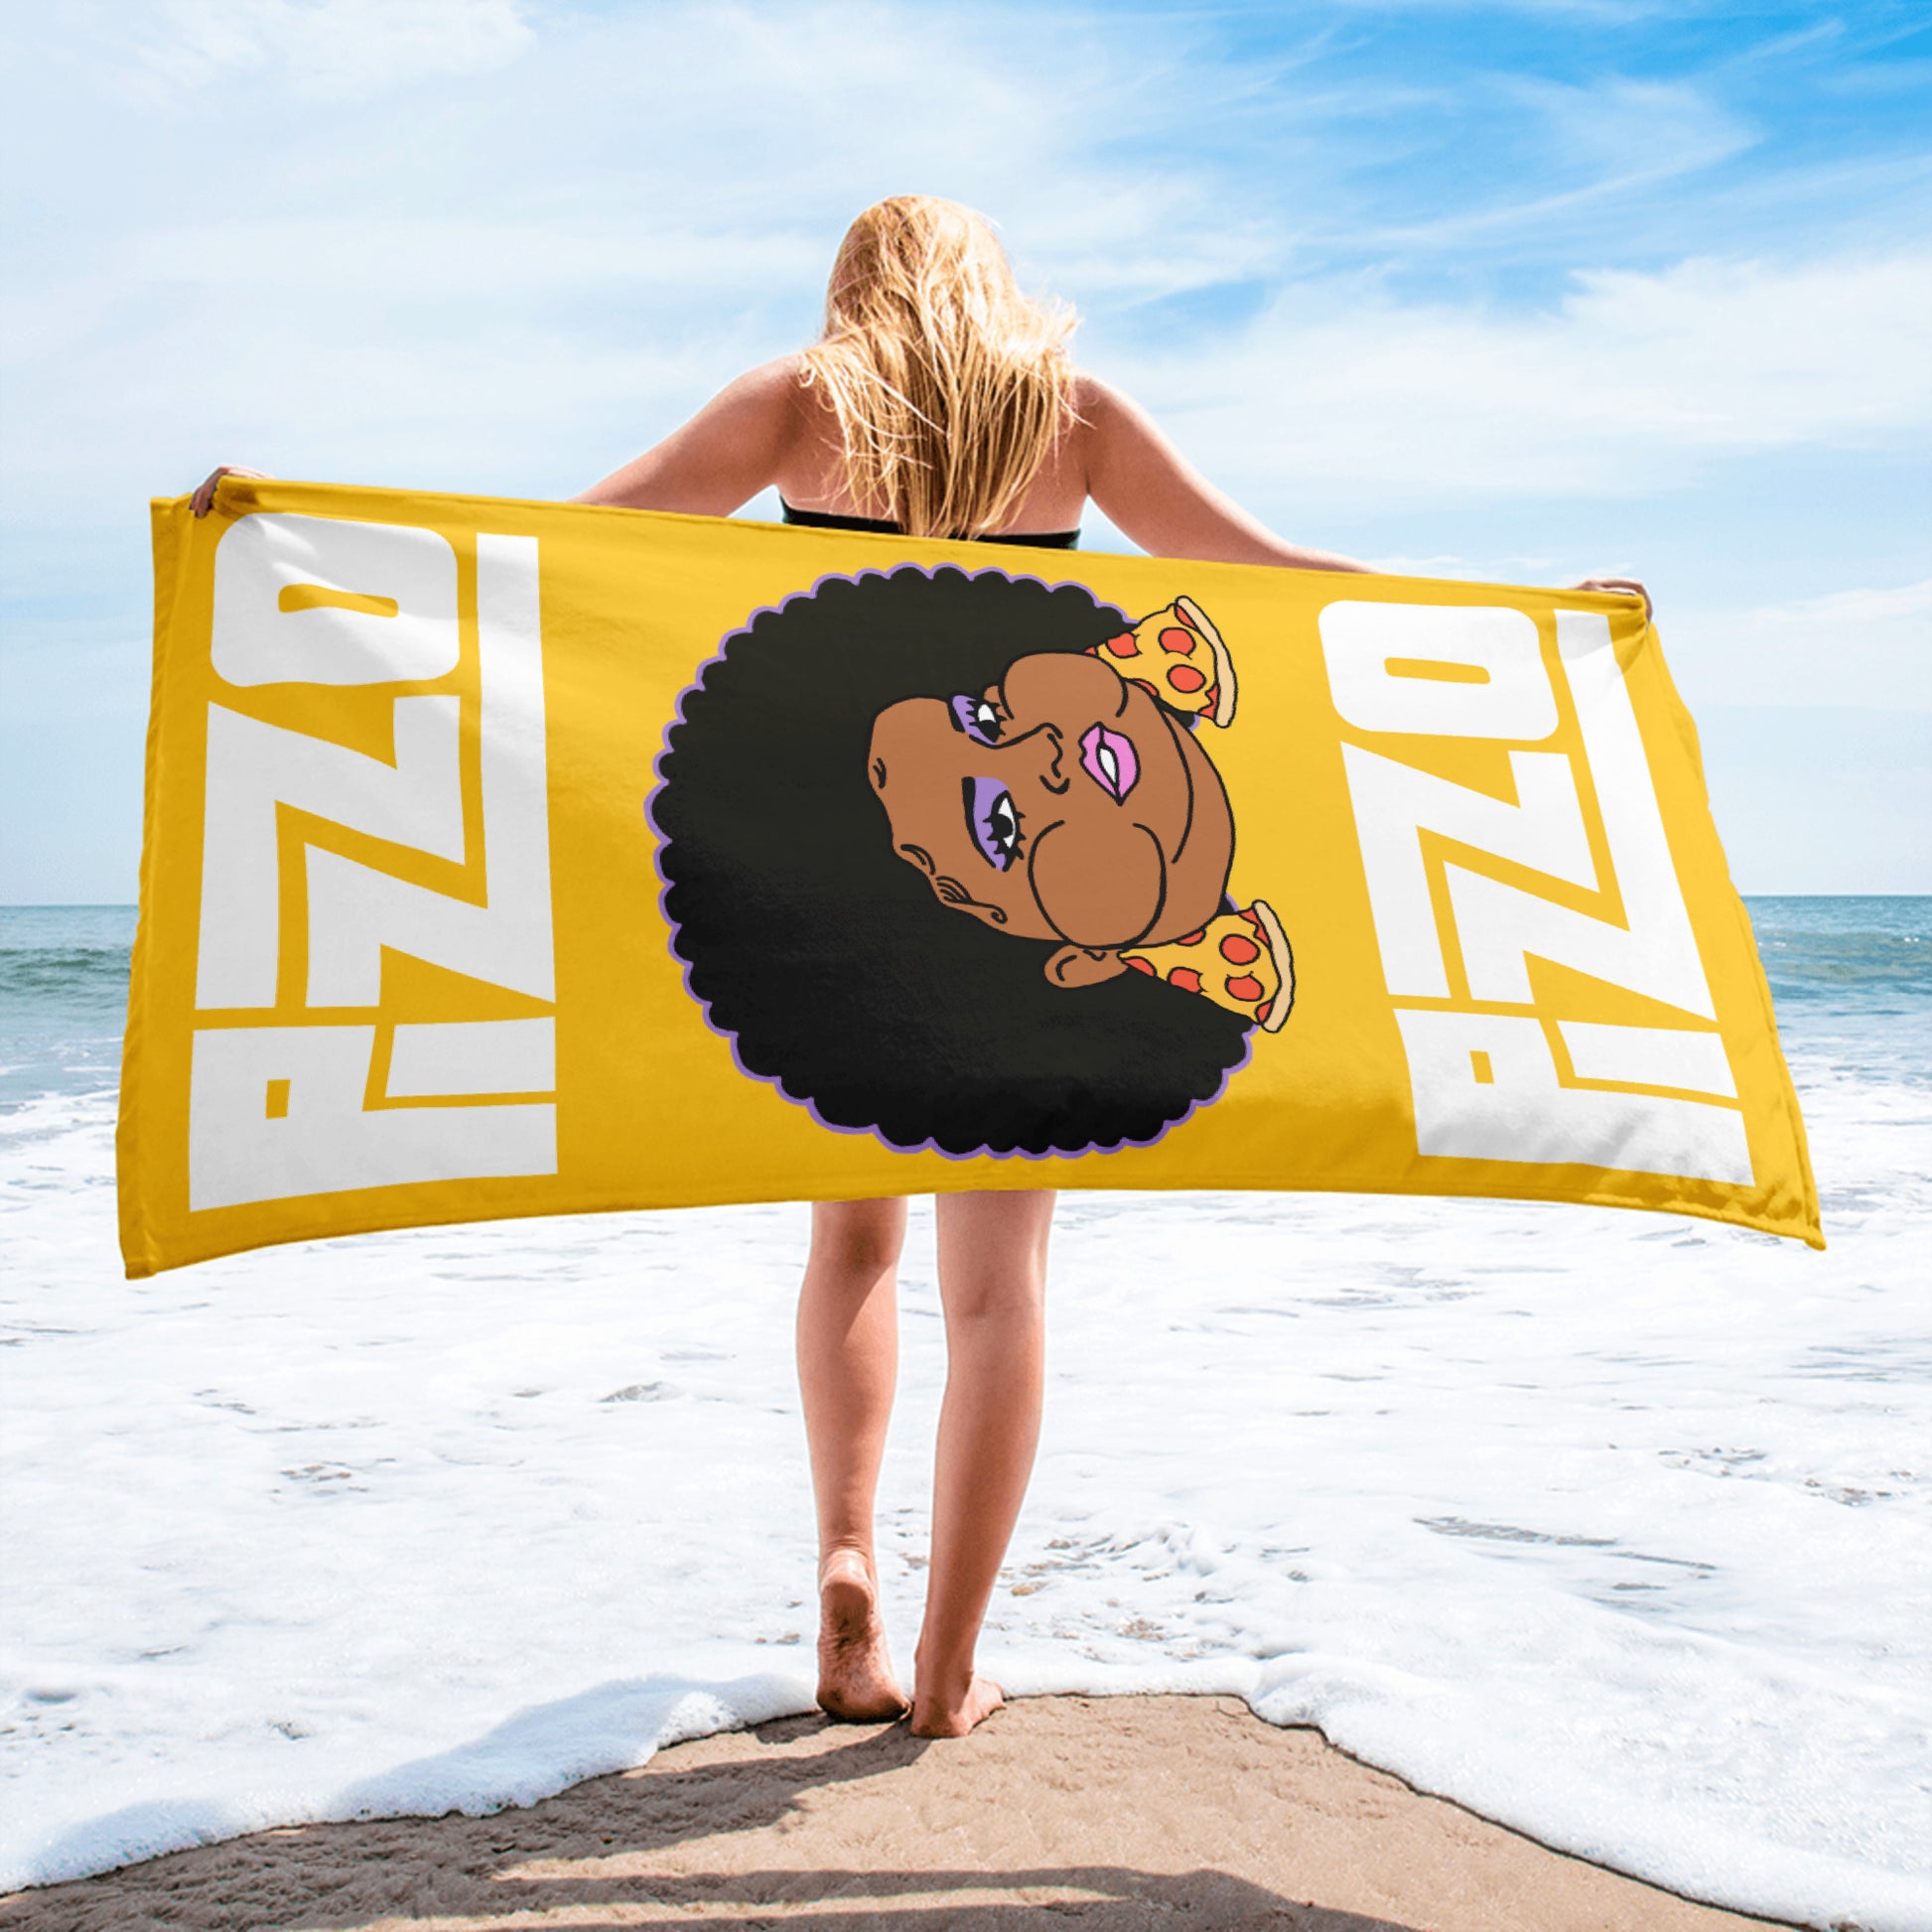 Pizzo Lizzo Pizza Lizzo Merch Lizzo Gift Song Lyrics Lizzo Towel Next Cult Brand